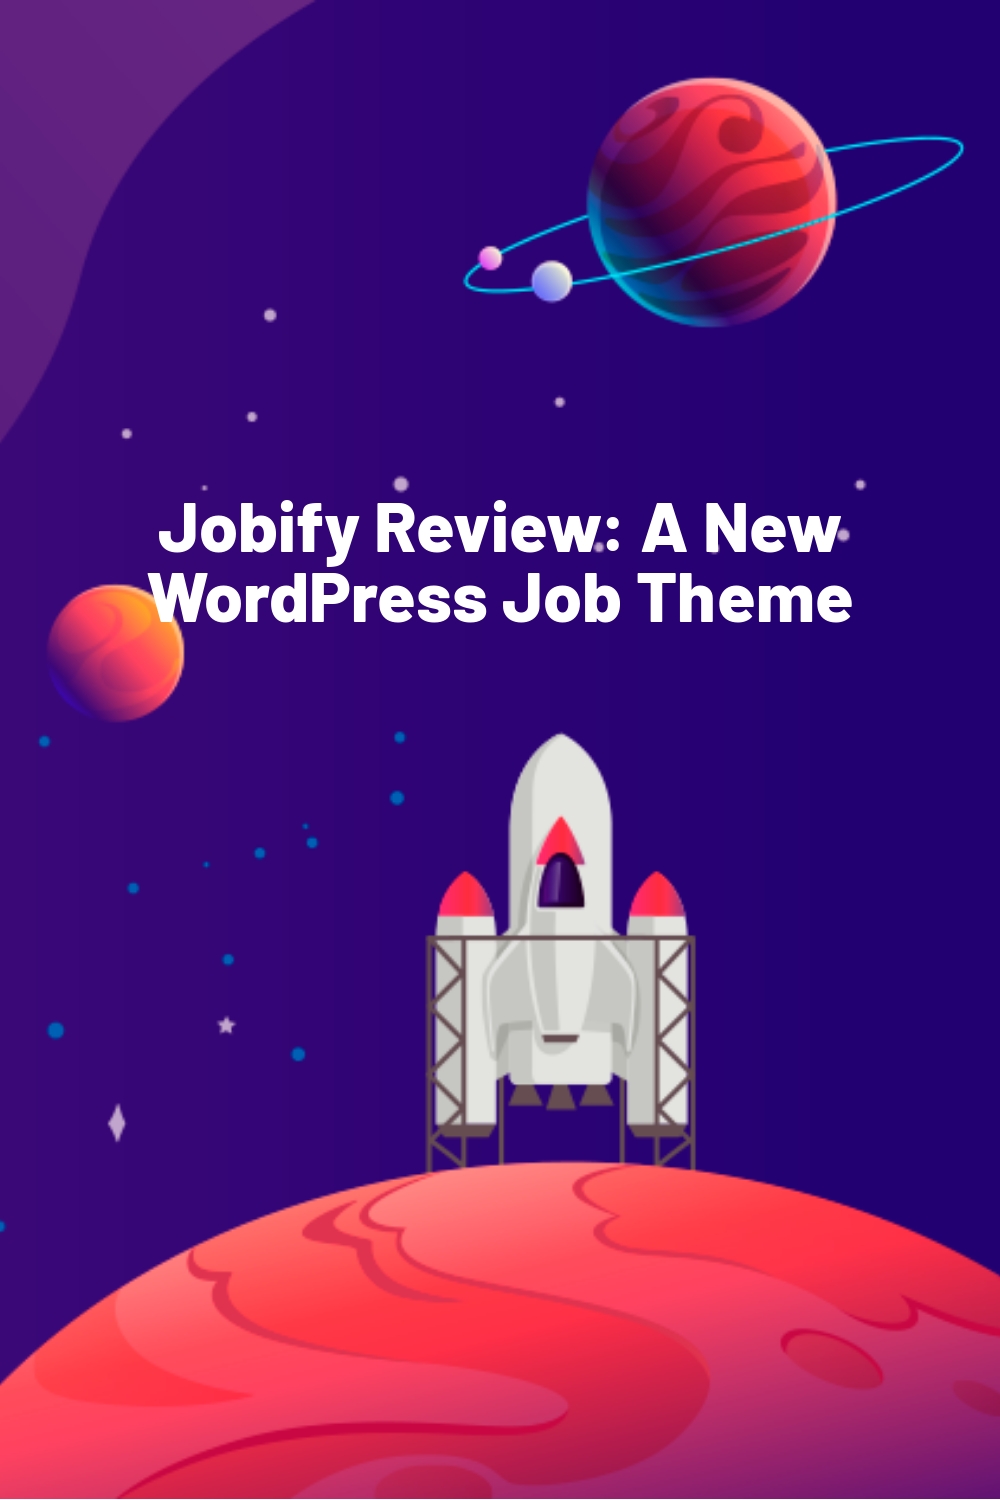 Jobify Review: A New WordPress Job Theme